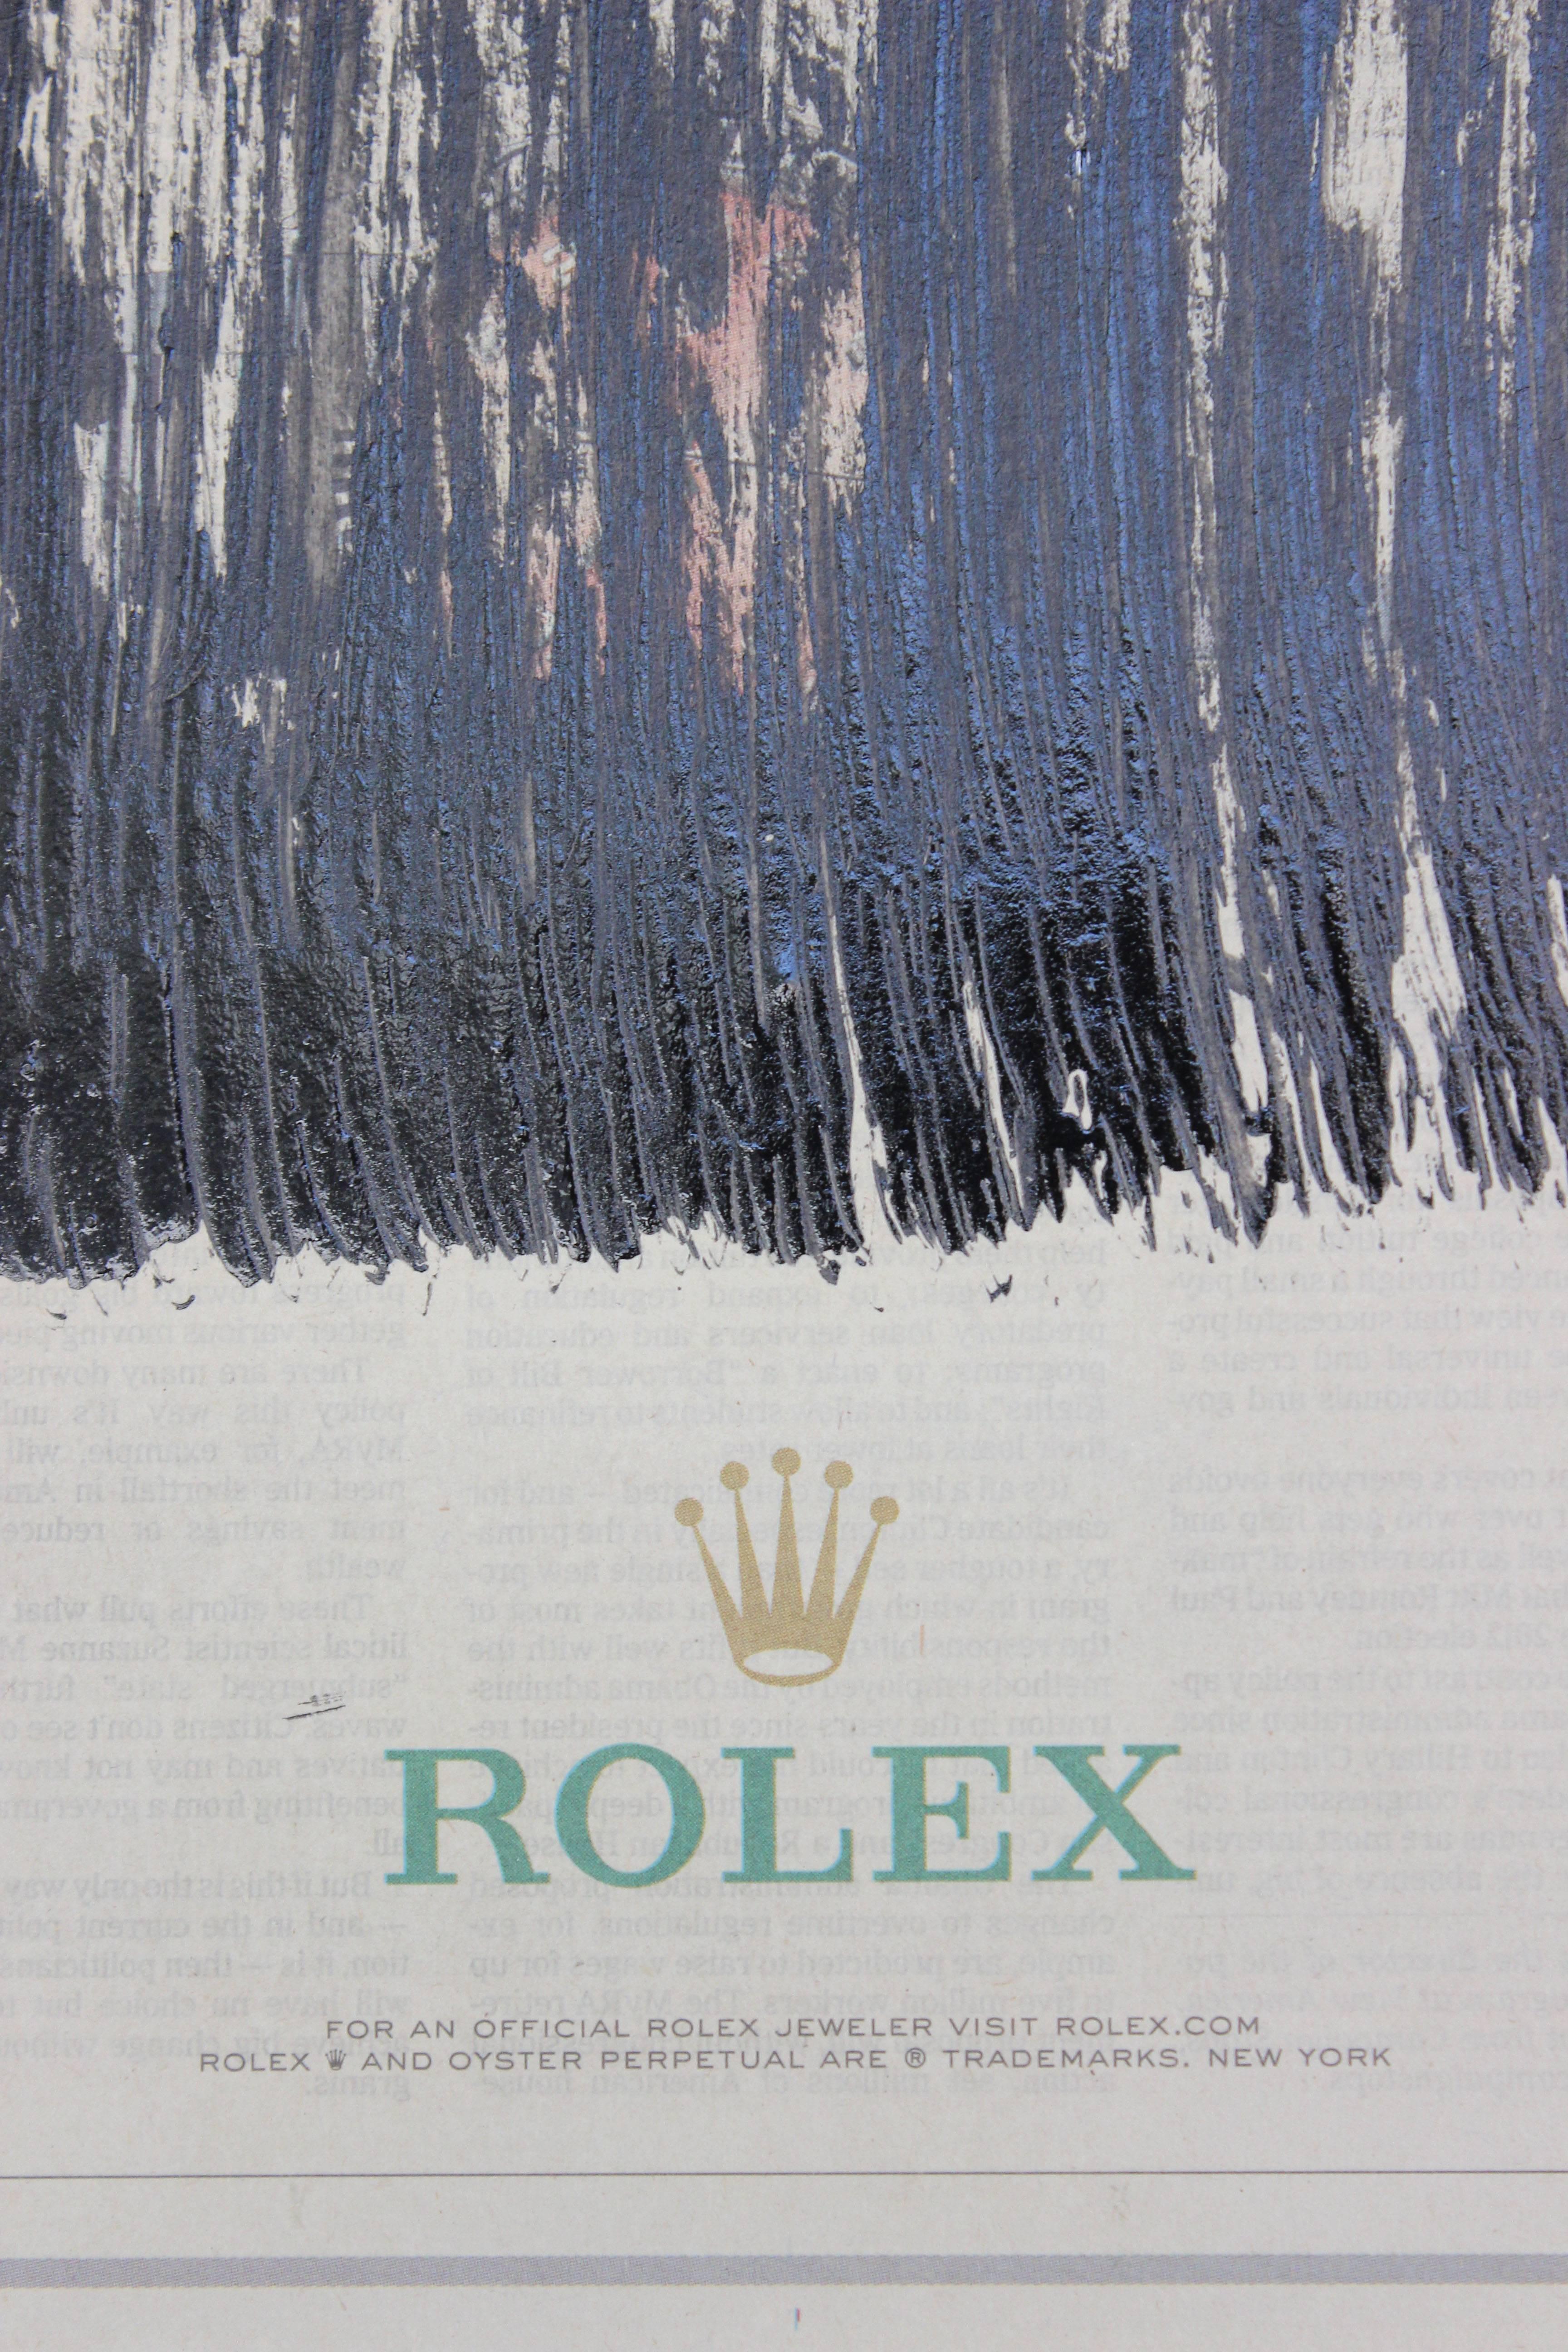 Paint Rolex 2016